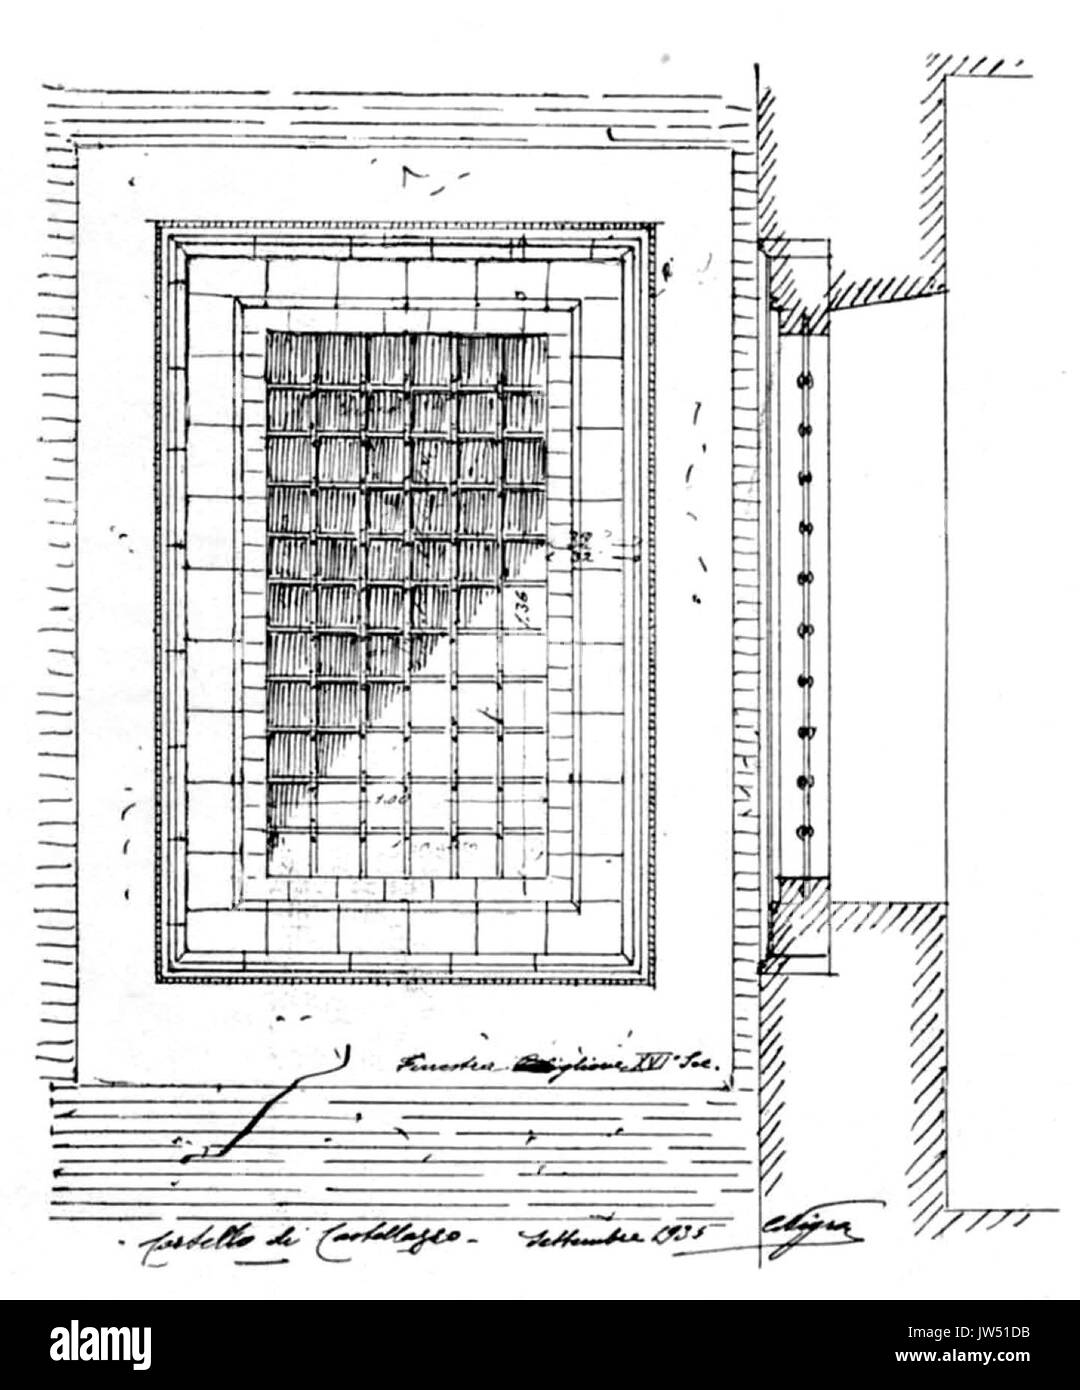 Abb. 88, Castello di Castellazzo, finestra sec XVI, p 184, dis nigra, Sett 1935 nigra il Novarese Stockfoto